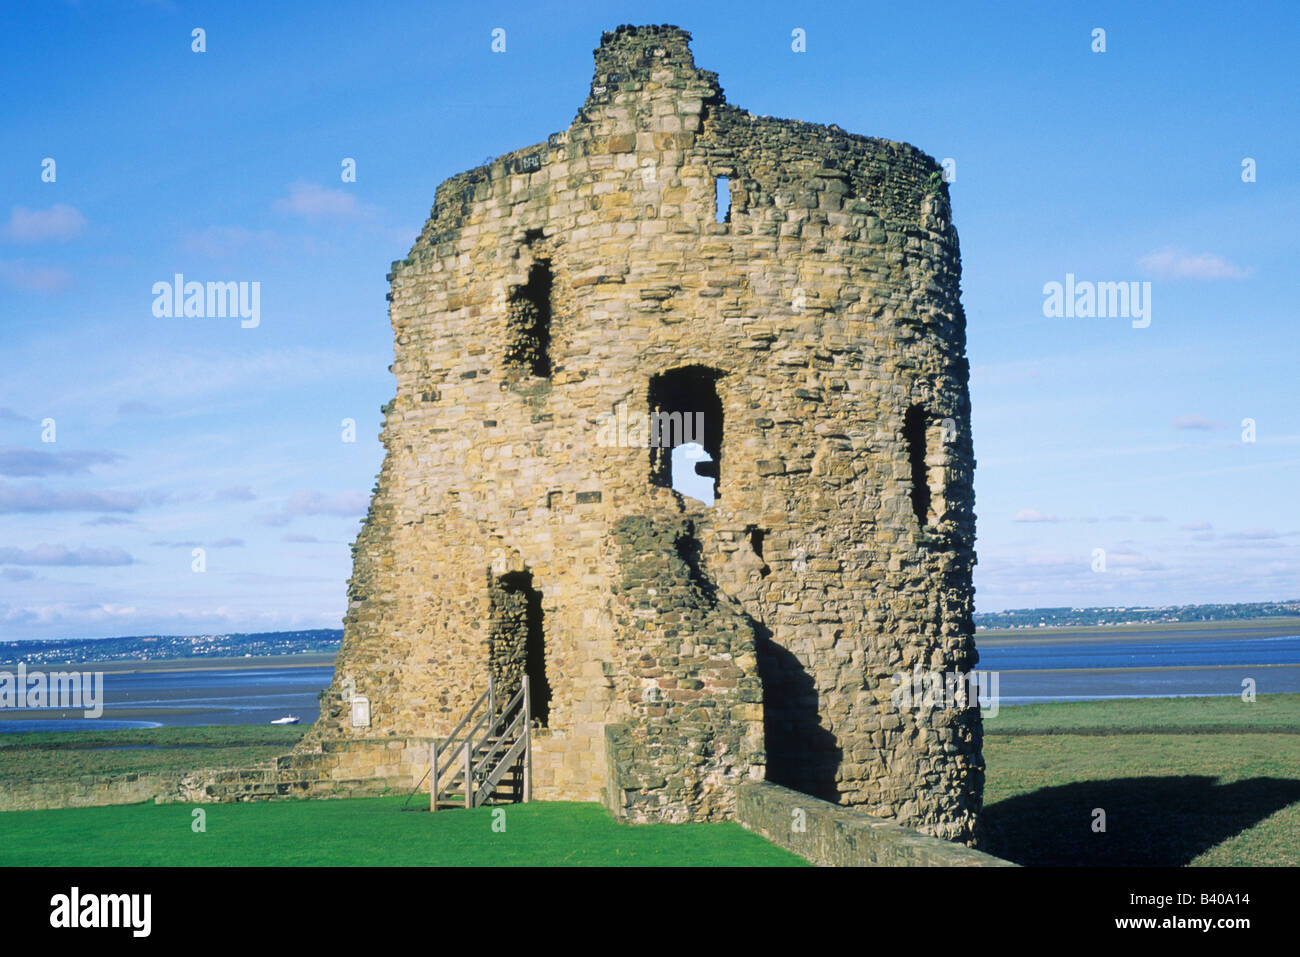 Flint Castle Clwyd Wales mittelalterlichen gebaut von Edward 1. Küste Küstenmeeres englische Architektur UK Turm Ruine ruiniert walisische Burgen Stockfoto